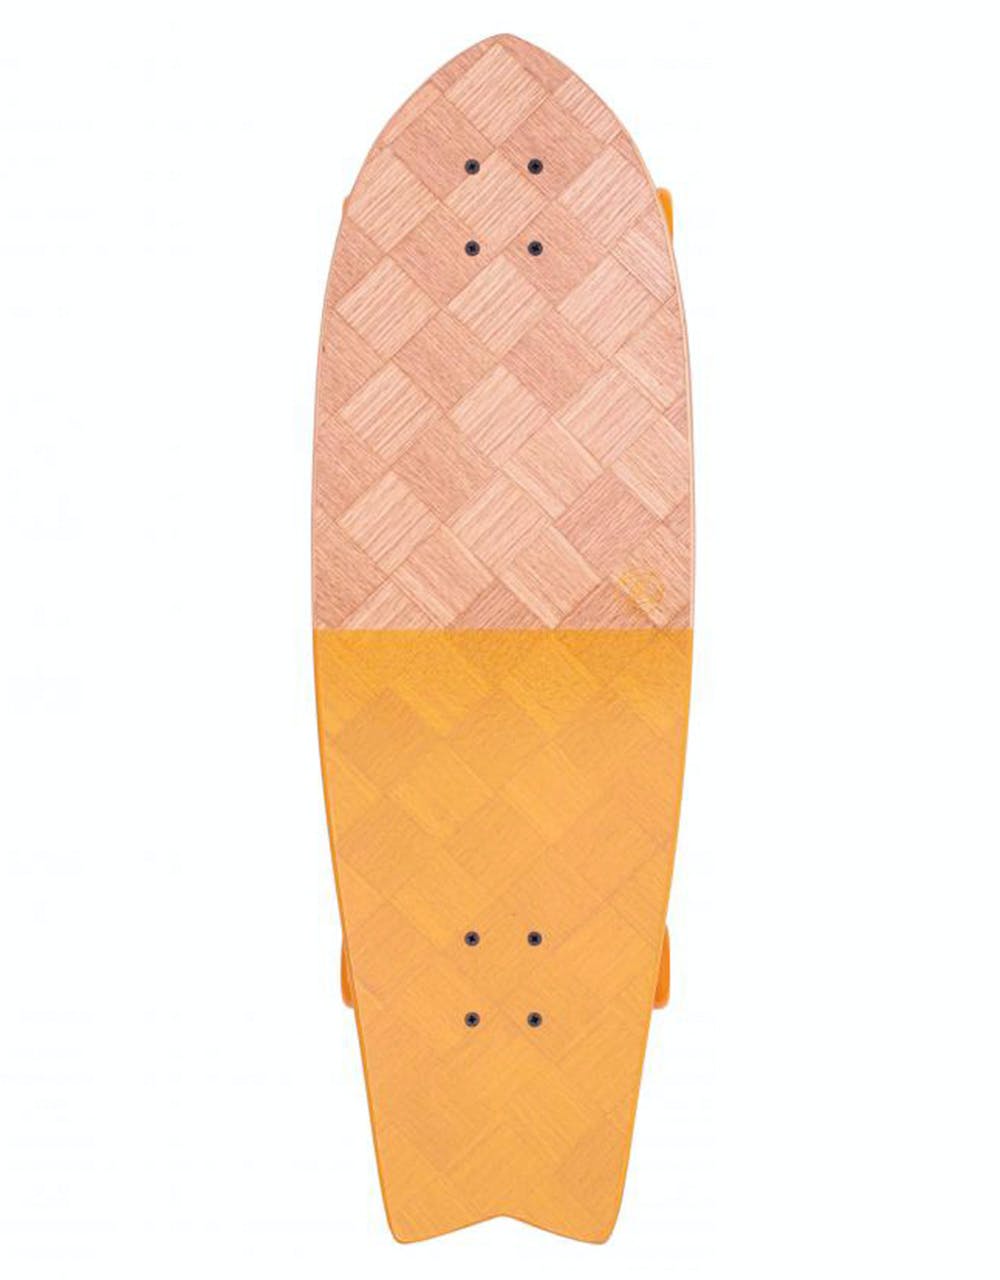 Z Flex Banana Train Fish Surfskate Cruiser Skateboard - 7.875" x 31"